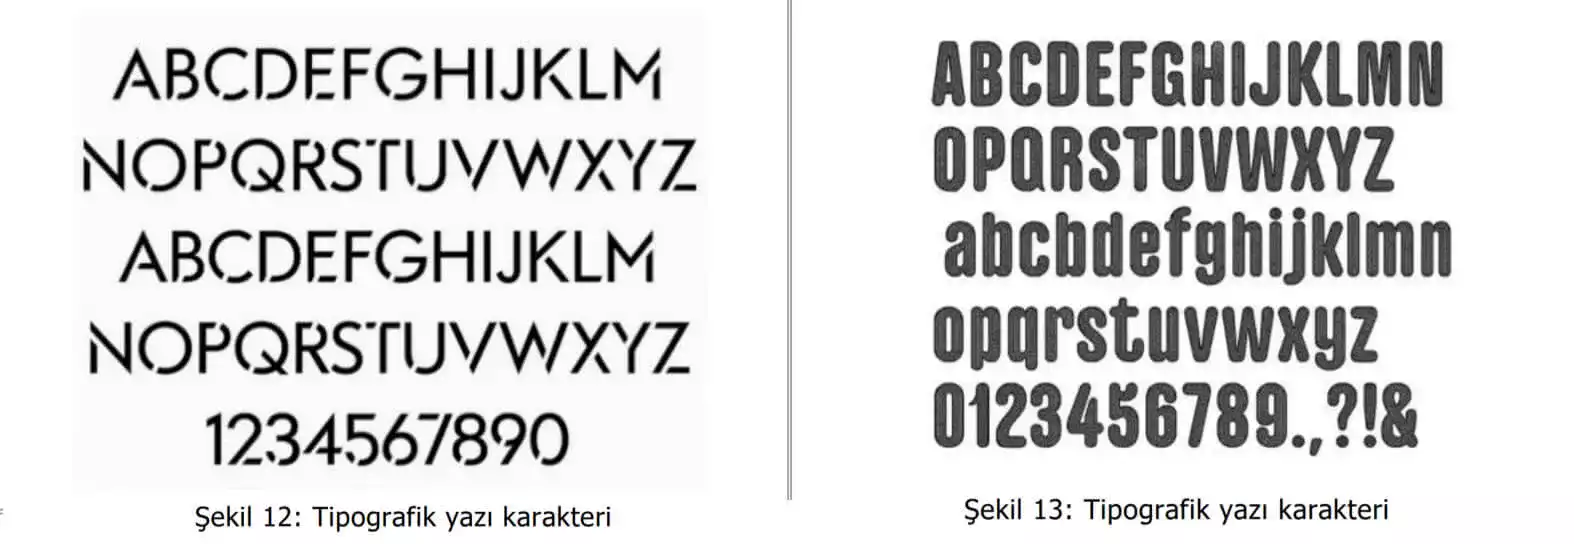 tipografik yazı karakter örnekleri-Isparta Patent